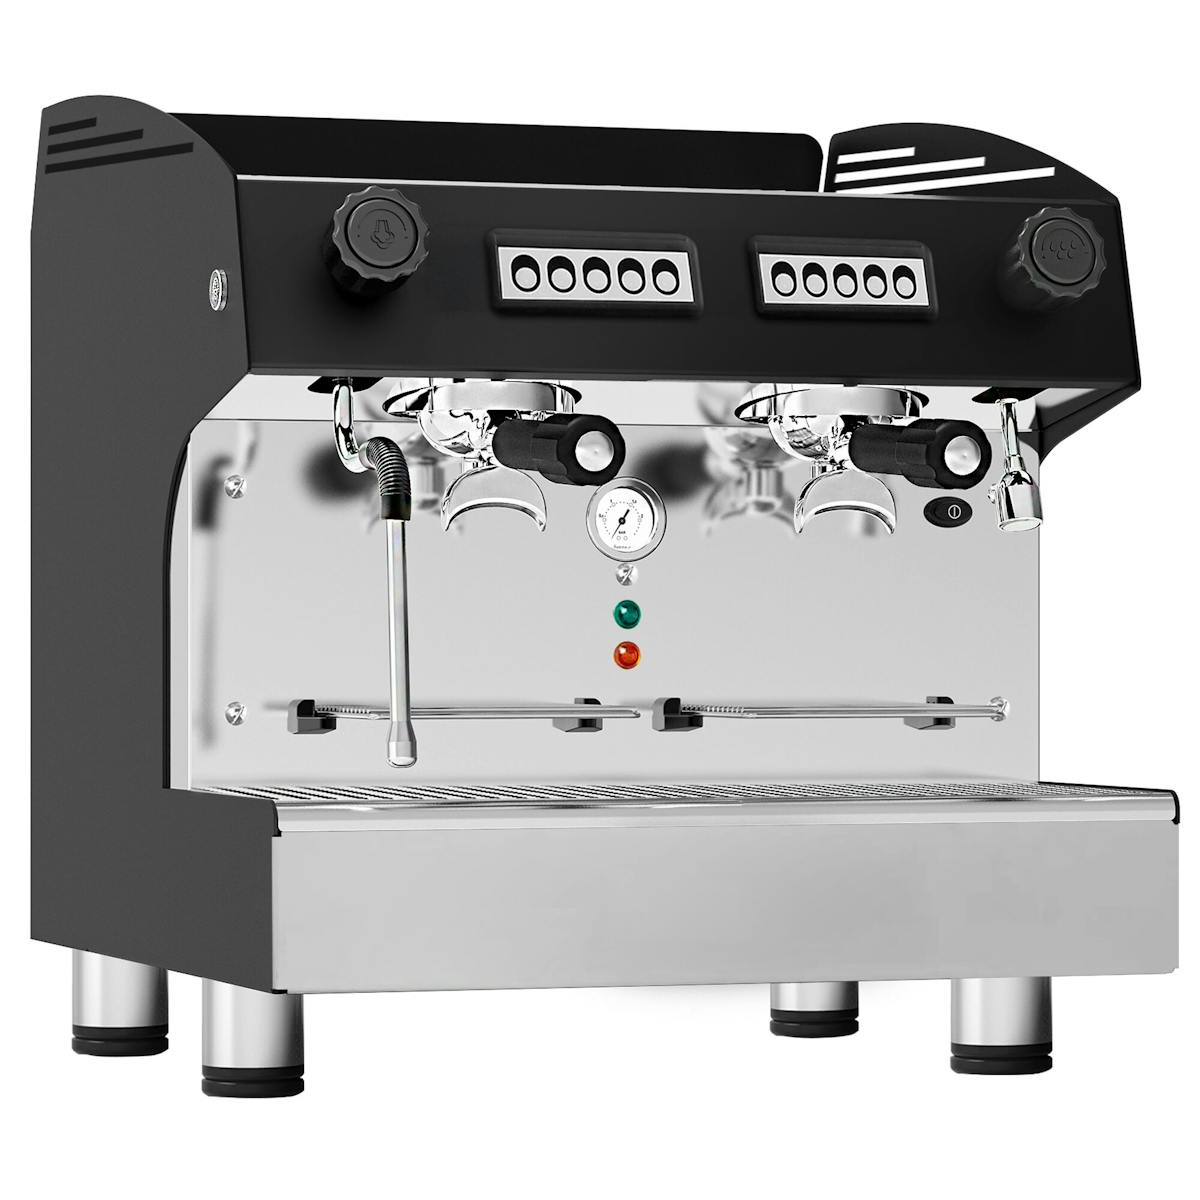 Pákový kávovar Compact - 2 skupiny - vč. systému pre-infuze